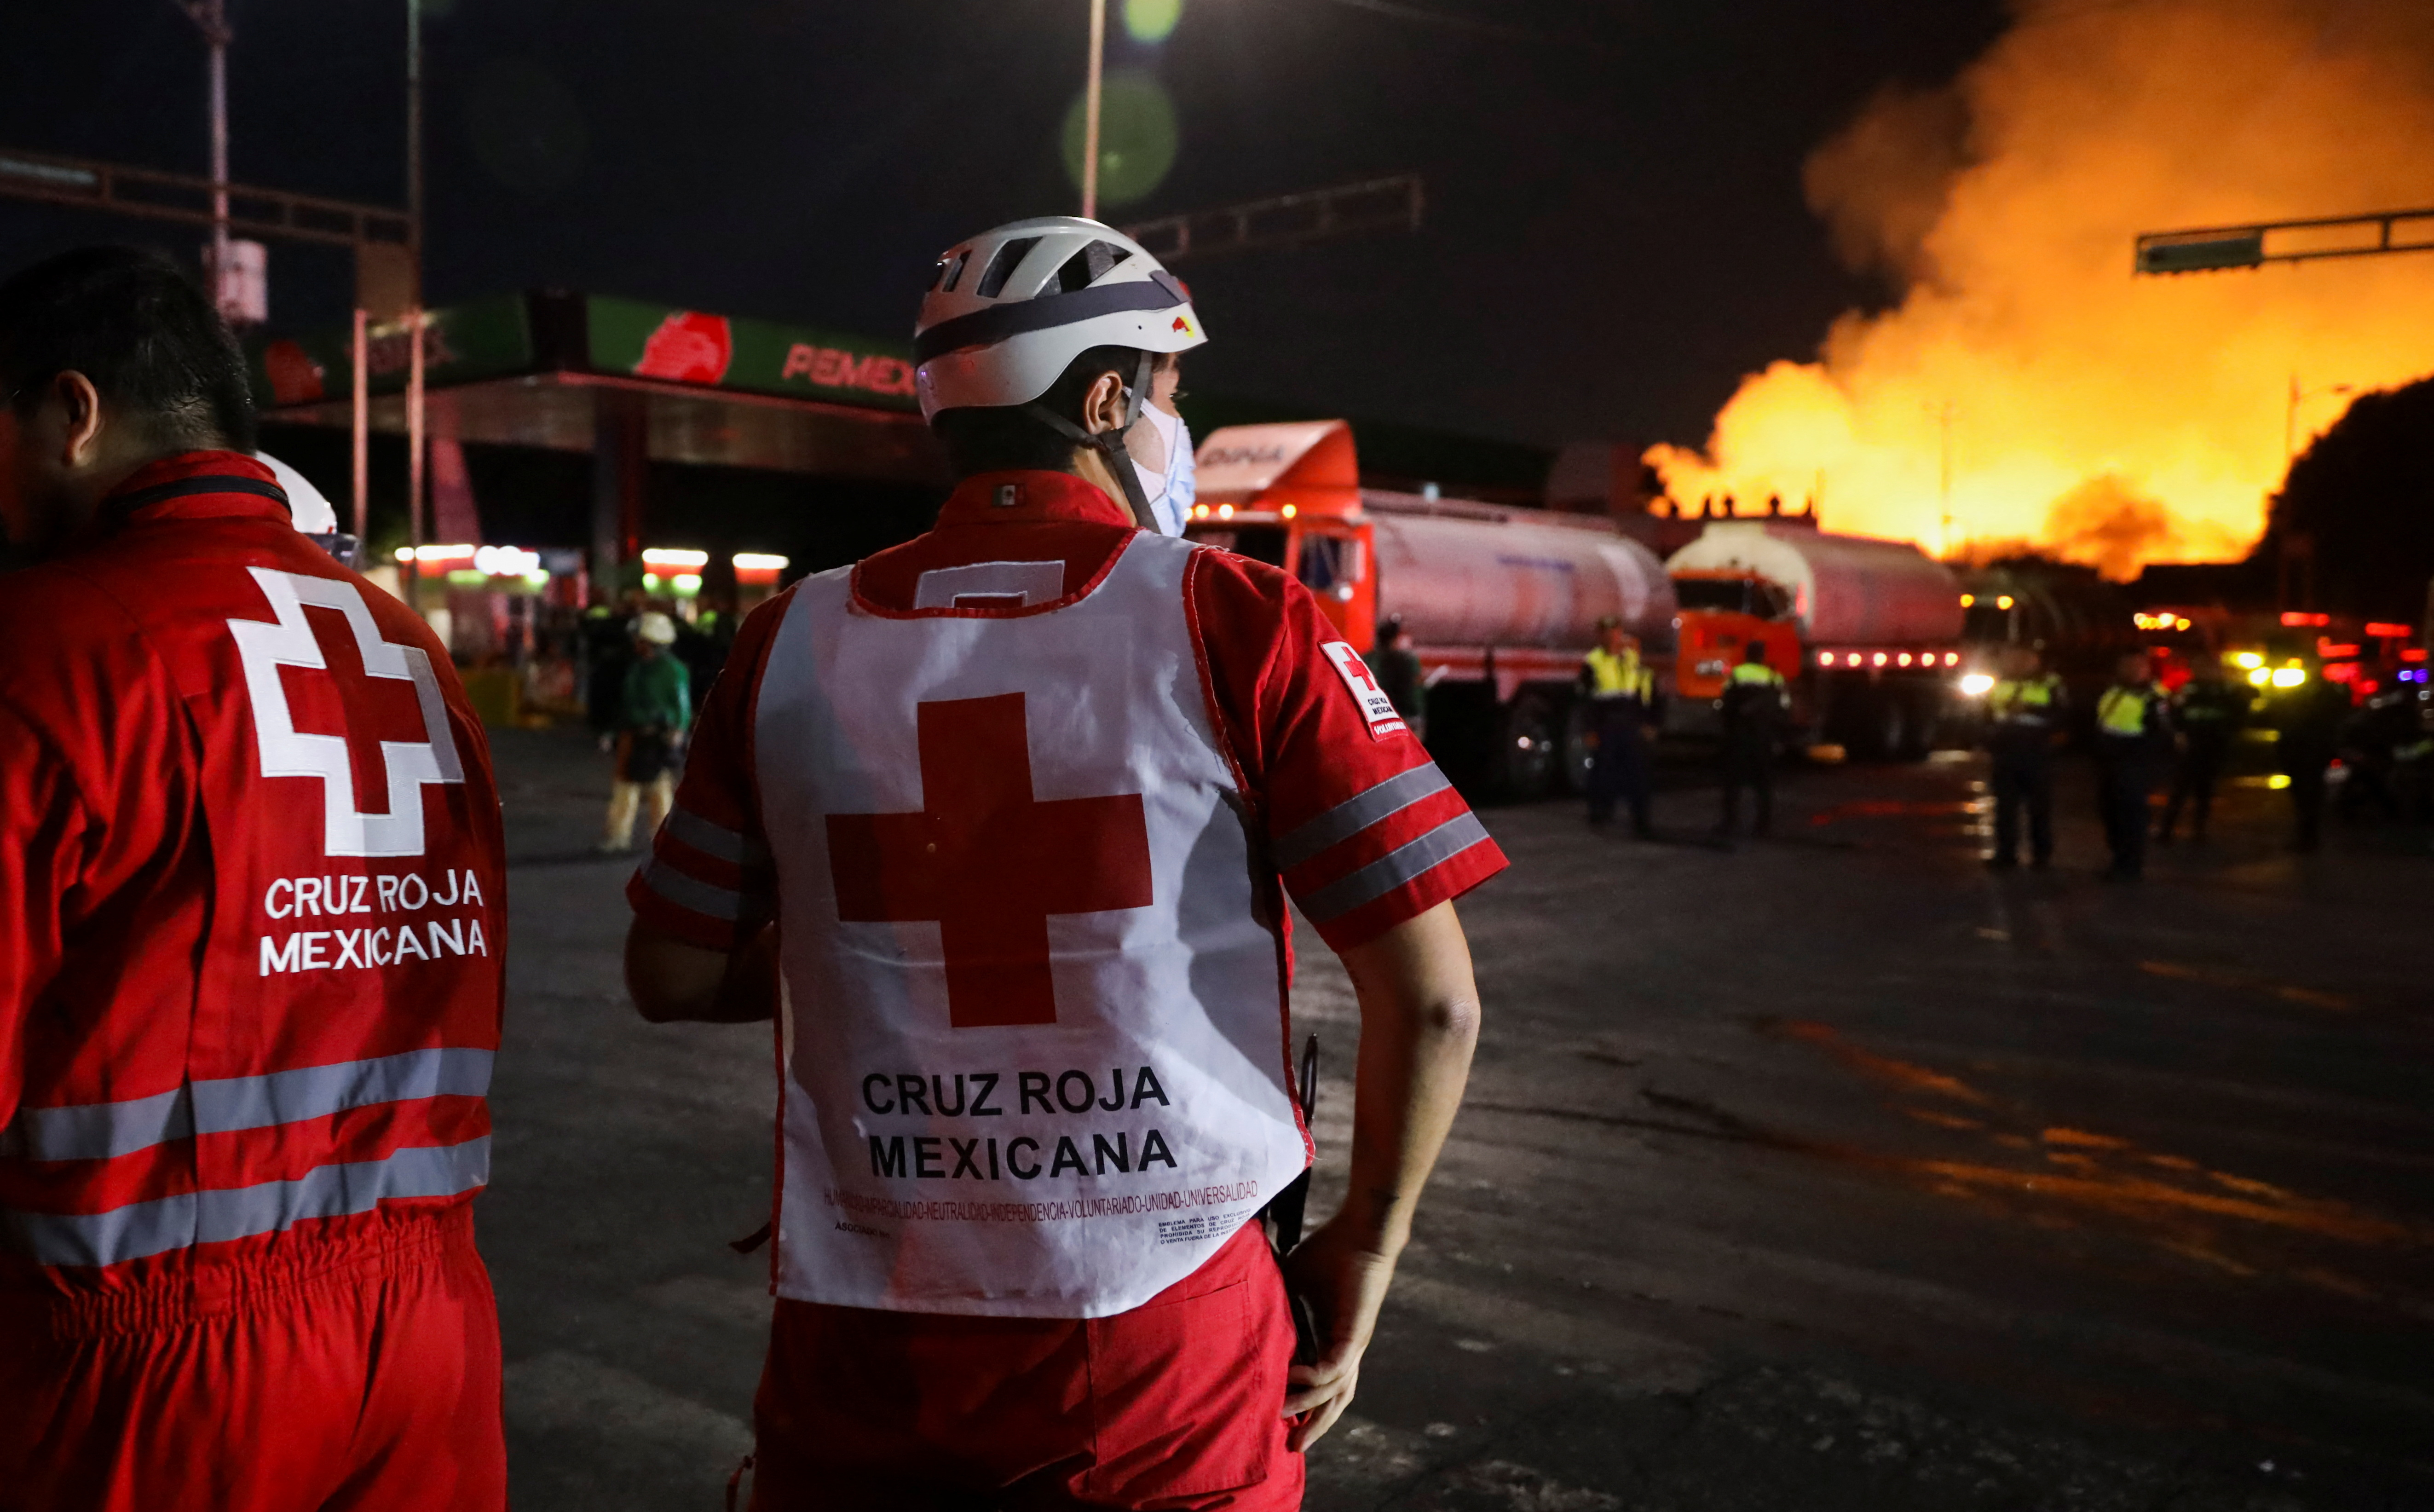 Personal de la Cruz Roja estuvo atenta para atender a posibles lesionados, aunque el saldo fue blanco. REUTERS/Luis Cortes